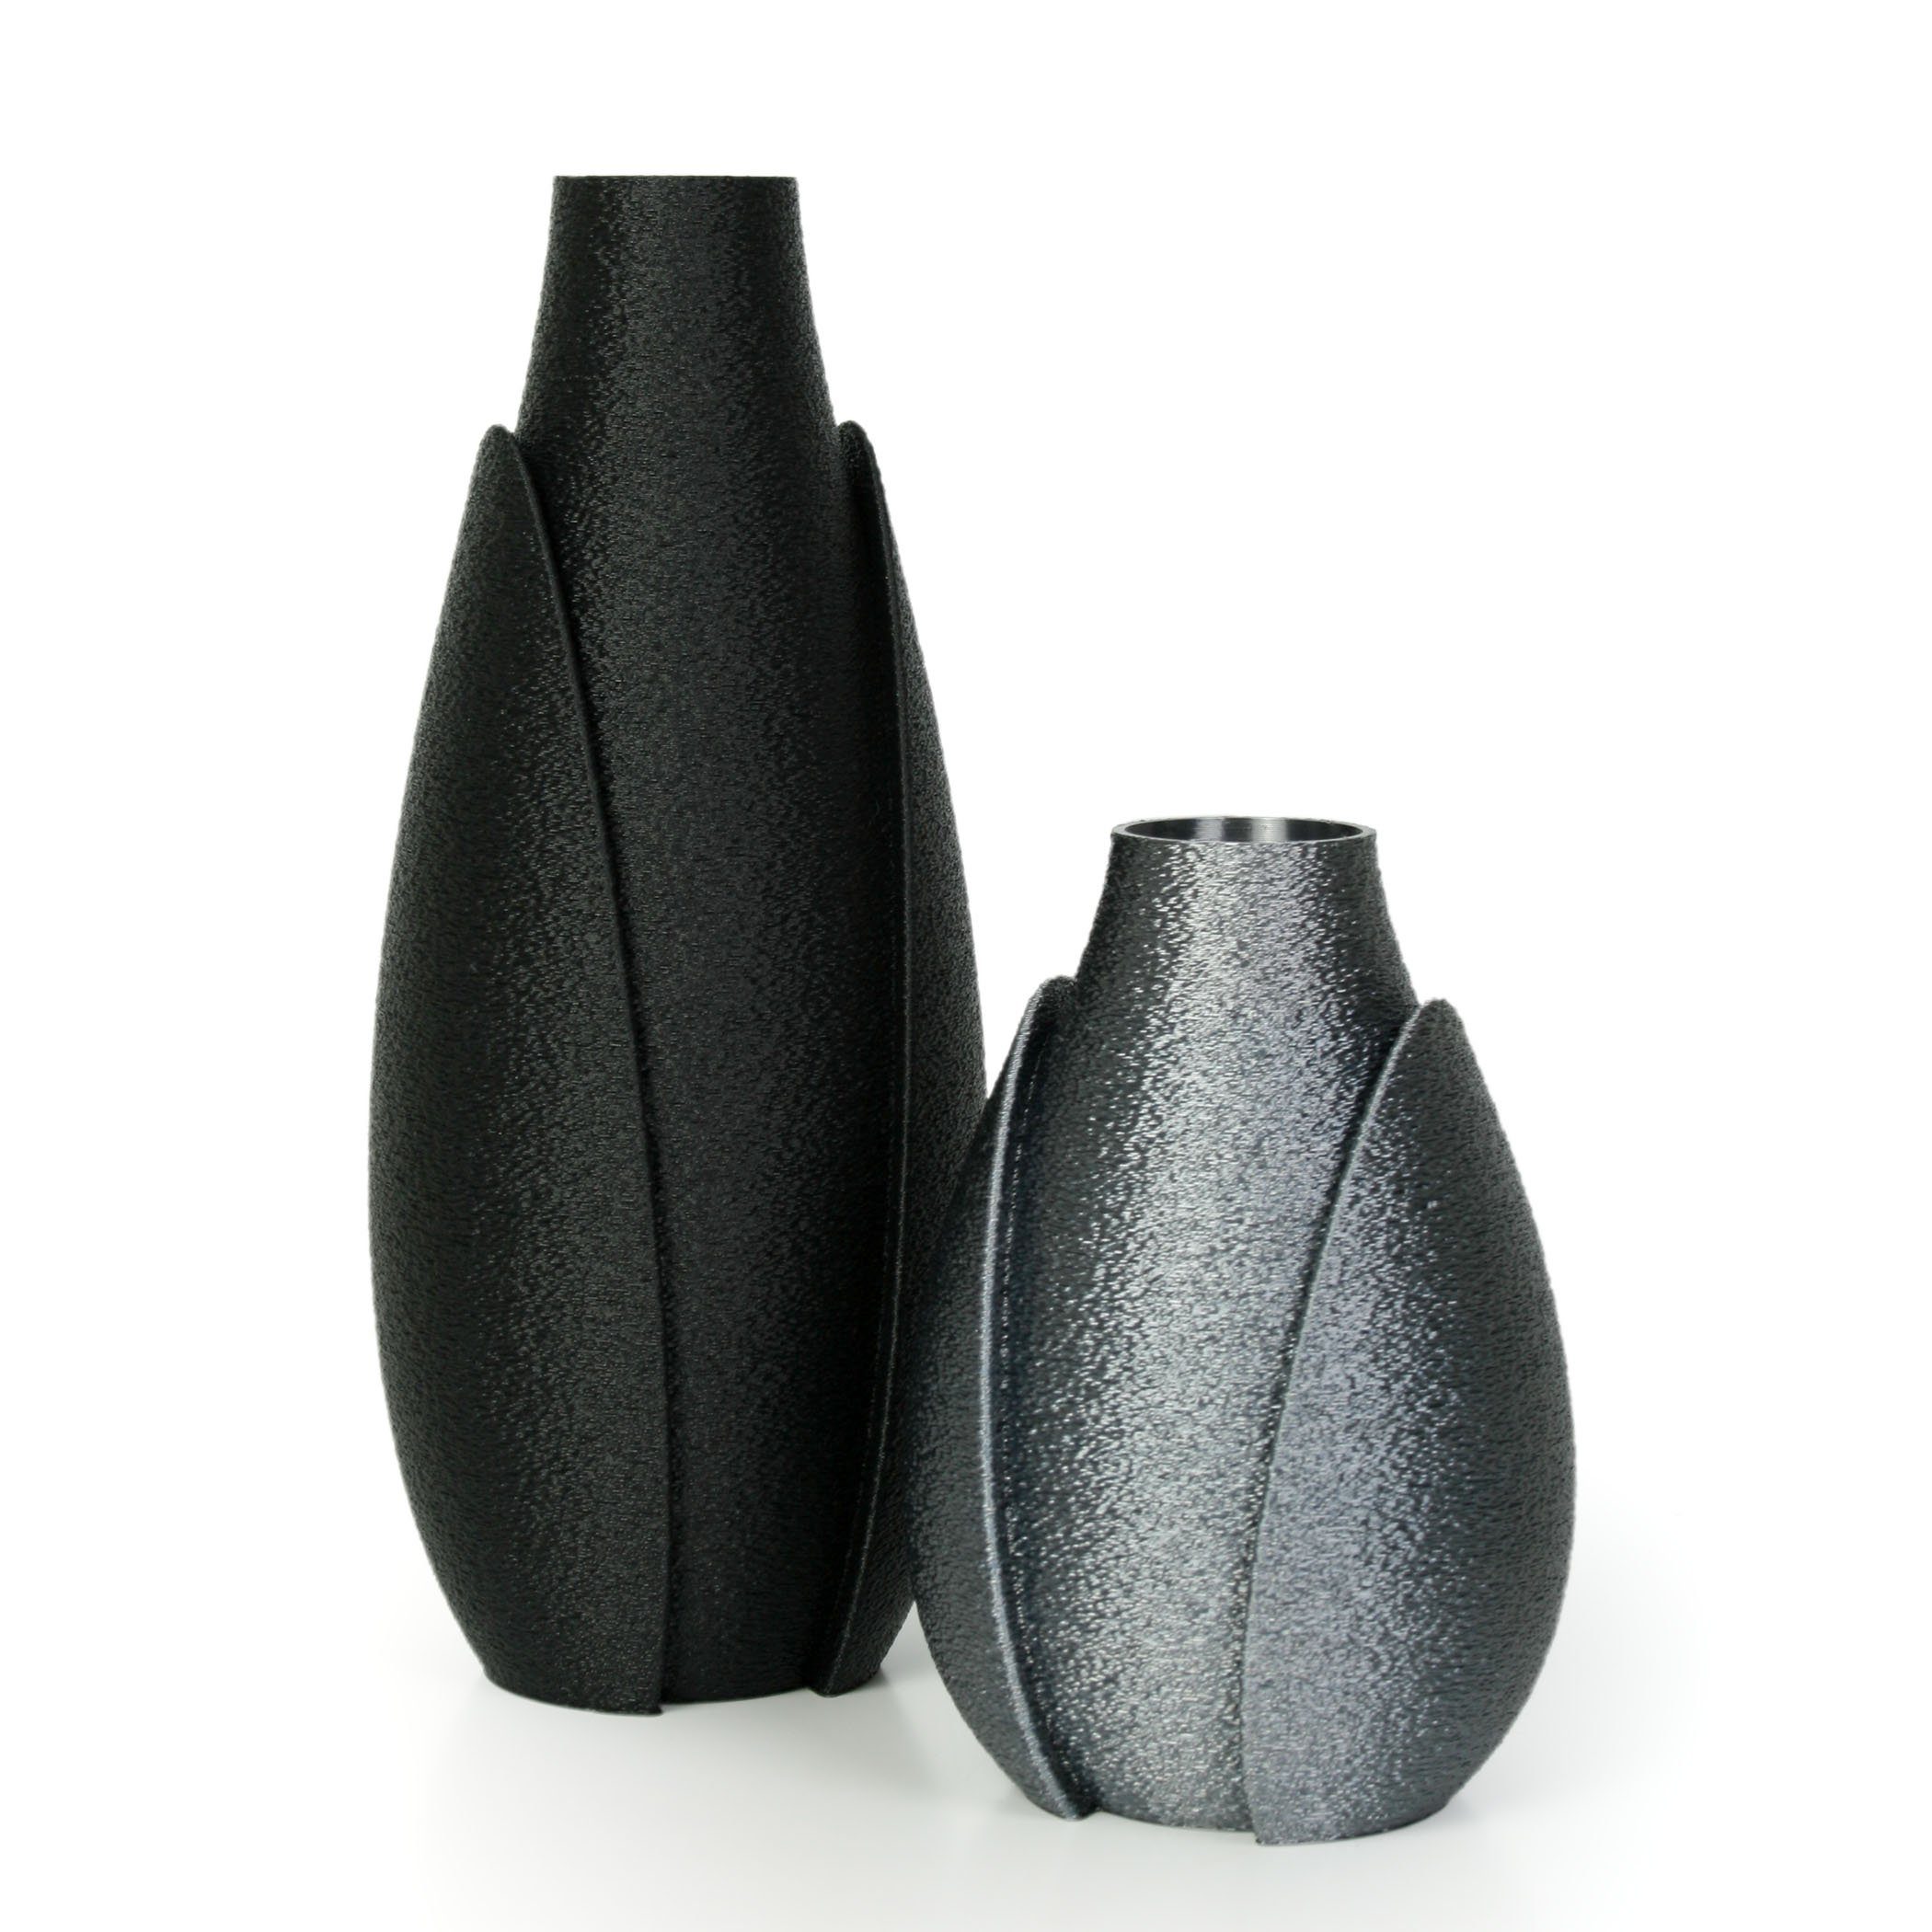 Kreative Feder Dekovase Designer Vasen-Set – Dekorative Blumenvasen aus Bio-Kunststoff (Set, Set bestehend aus 2 Vasen), aus nachwachsenden Rohstoffen; wasserdicht & bruchsicher Schwarz & Altsilber